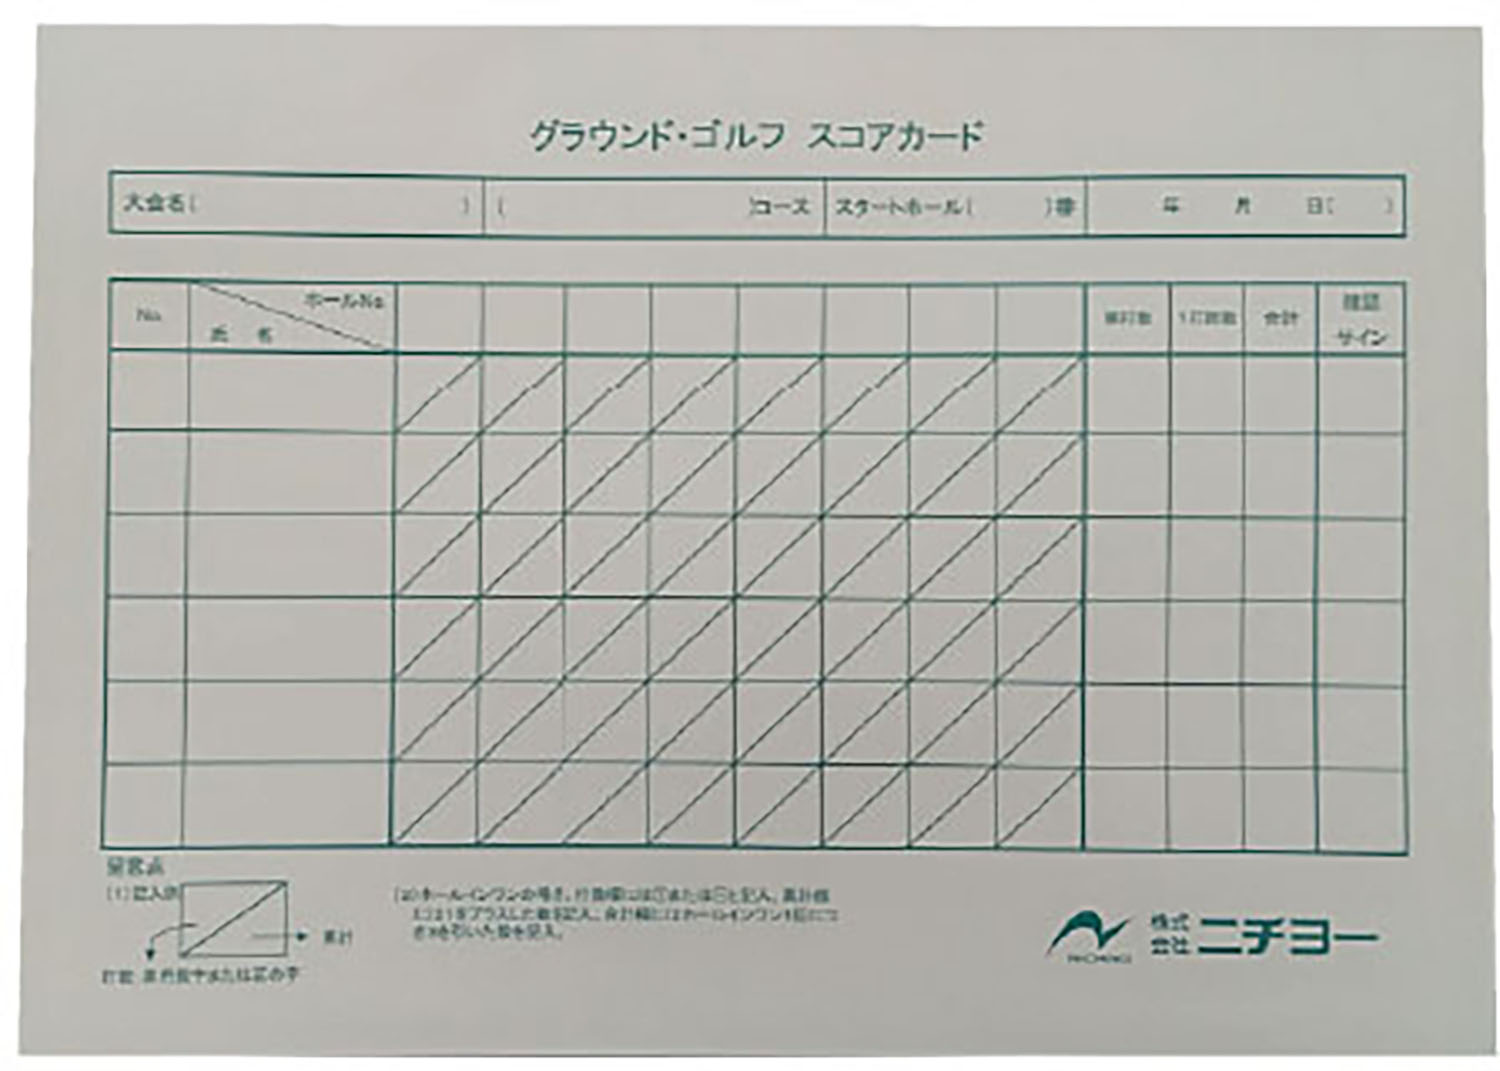 素材： PPC 用紙サイズ： B5 サイズ原産国： 日本グループ記録用 8 ホール スコアカード